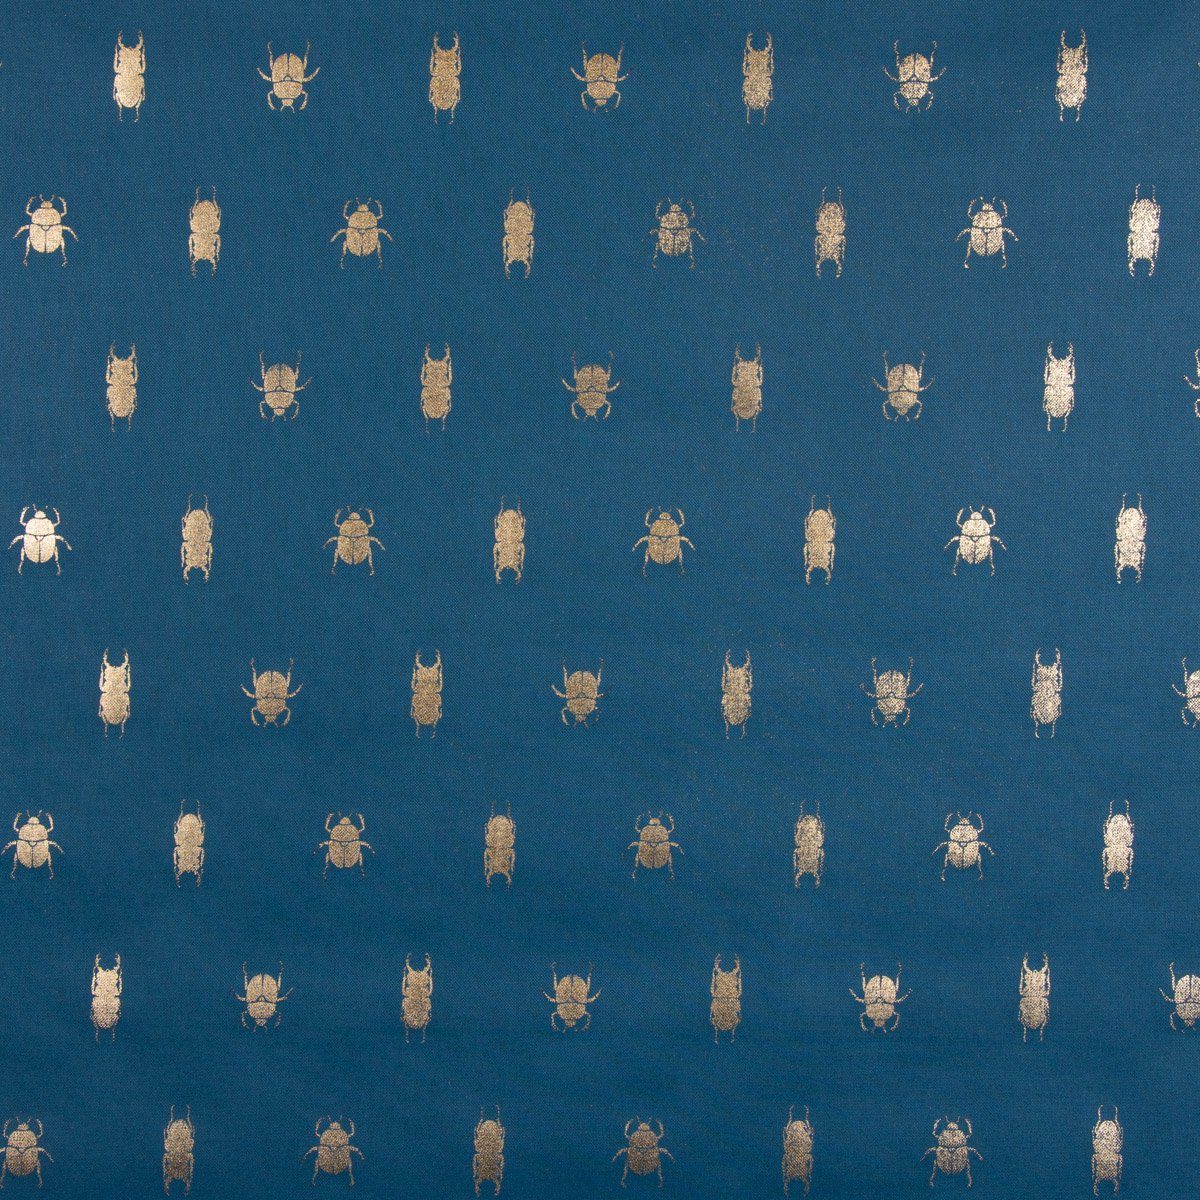 Tischläufer Tischläufer gold 40x160cm, blau SCHÖNER metallic LEBEN. SCHÖNER Käfer handmade LEBEN.